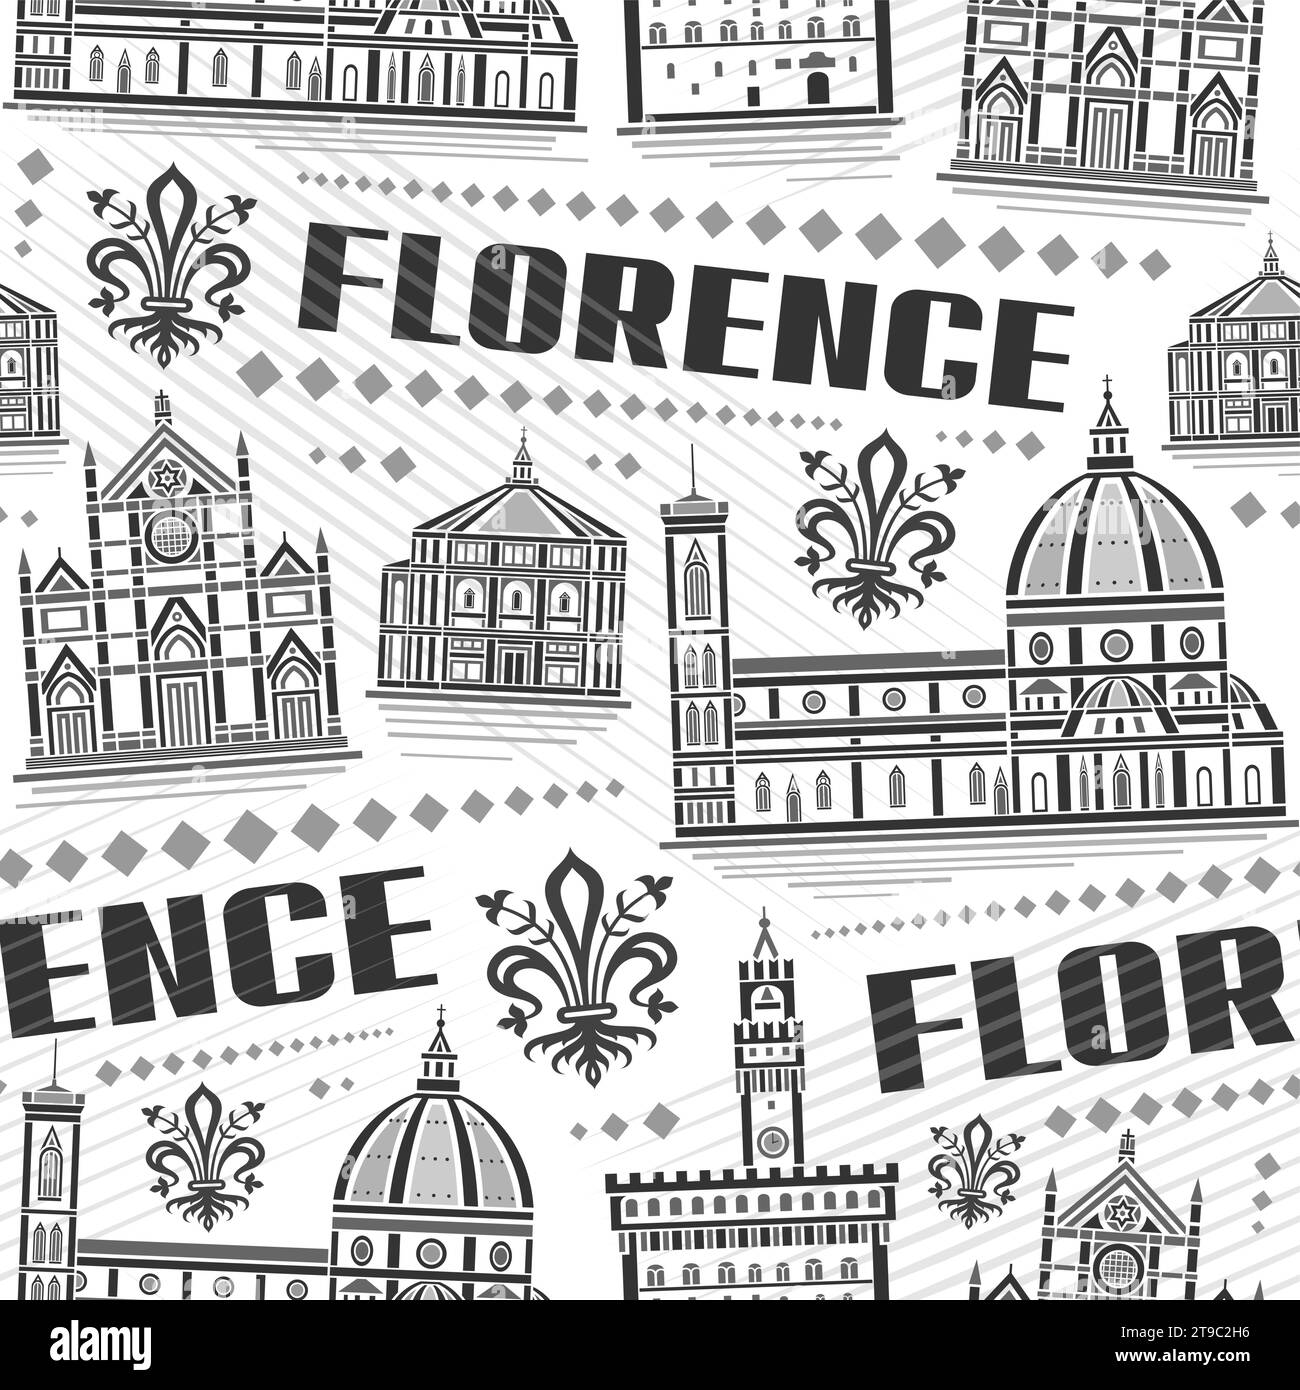 Vektor Florenz nahtloses Muster, wiederholen Hintergrund mit Illustration der berühmten europäischen florenz Stadtlandschaft auf weißem Hintergrund, monochrome Strichkunst Stock Vektor